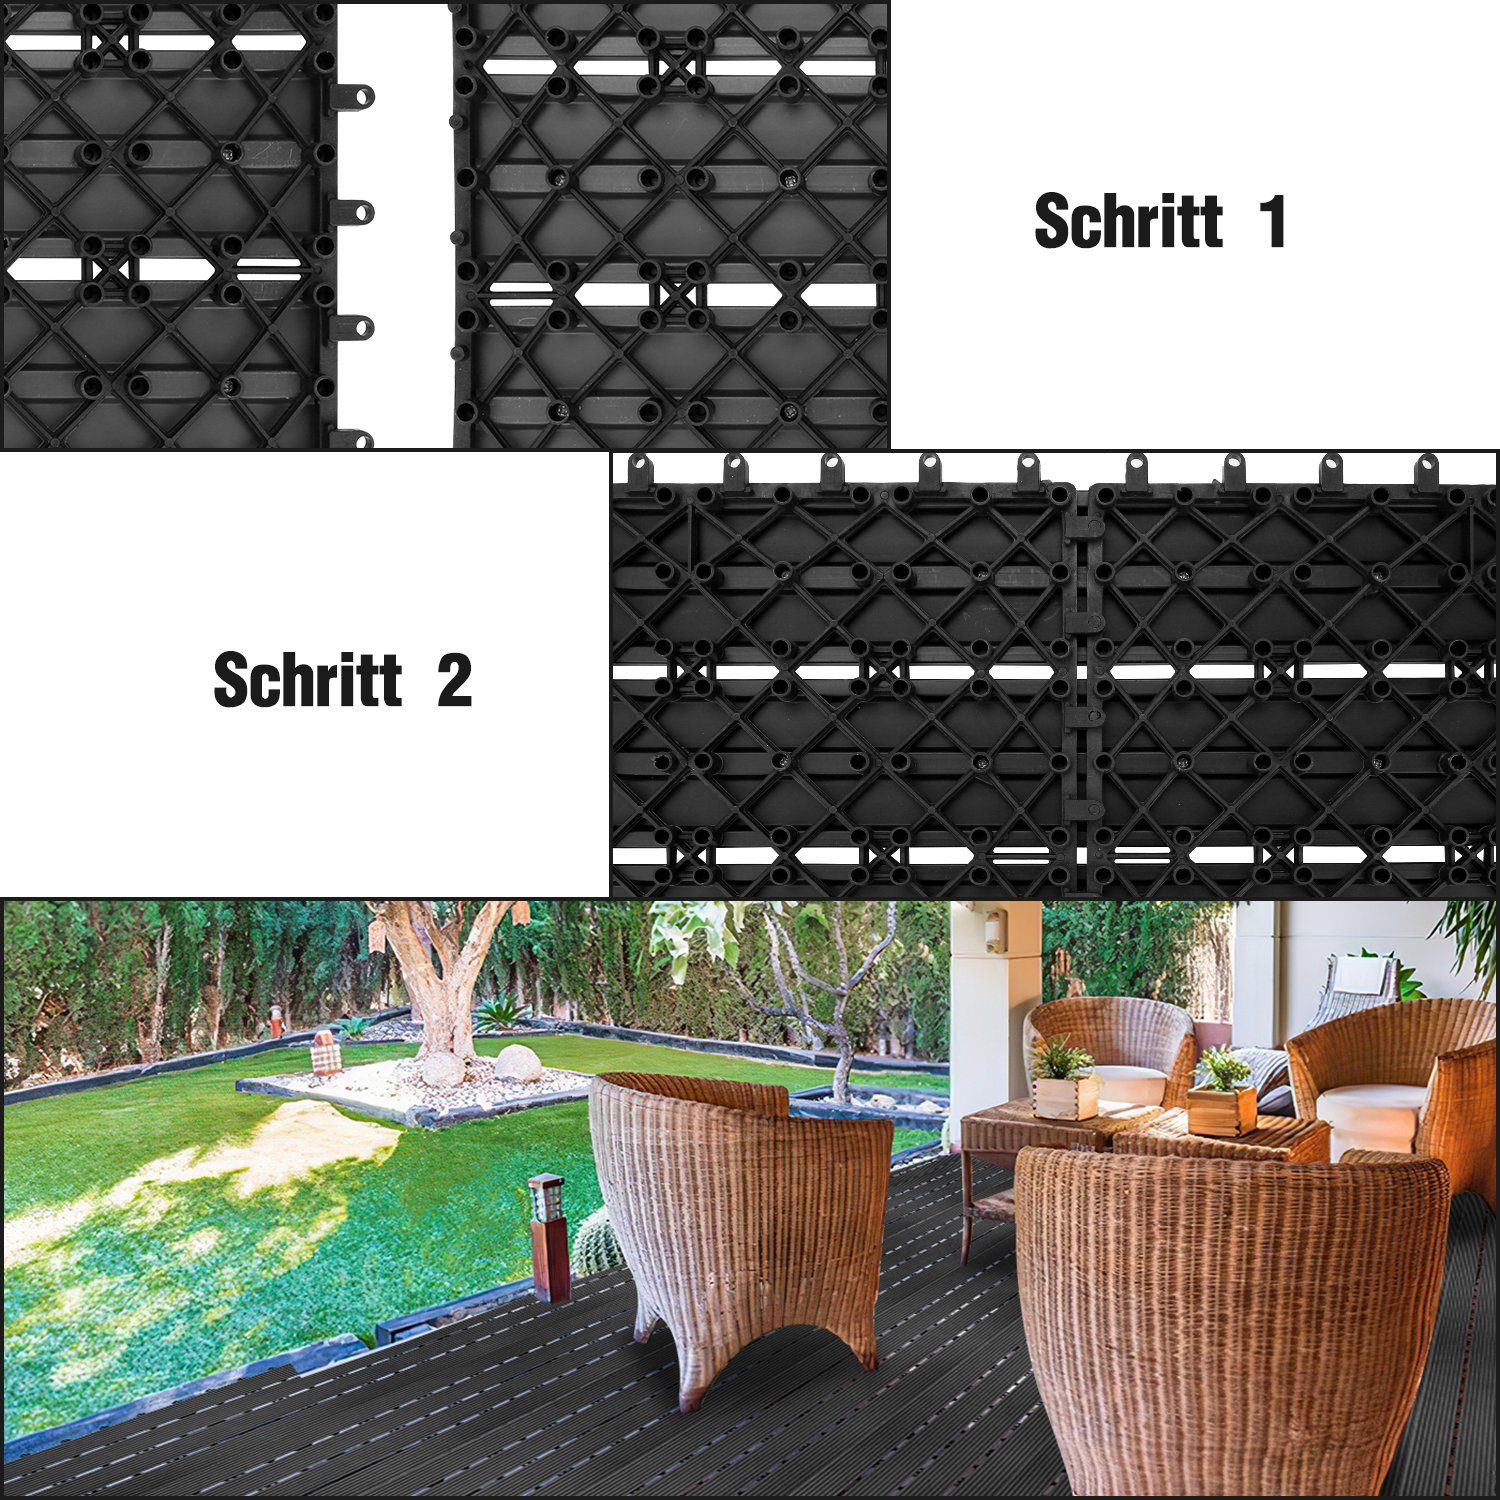 30x30cm Holzfliesen Holzoptik Terrassenfliesen Bodenbelag in für mit Lospitch Garten Klicksystem und 1m² Balkon, Drainage Holzfliesen Anthrazit